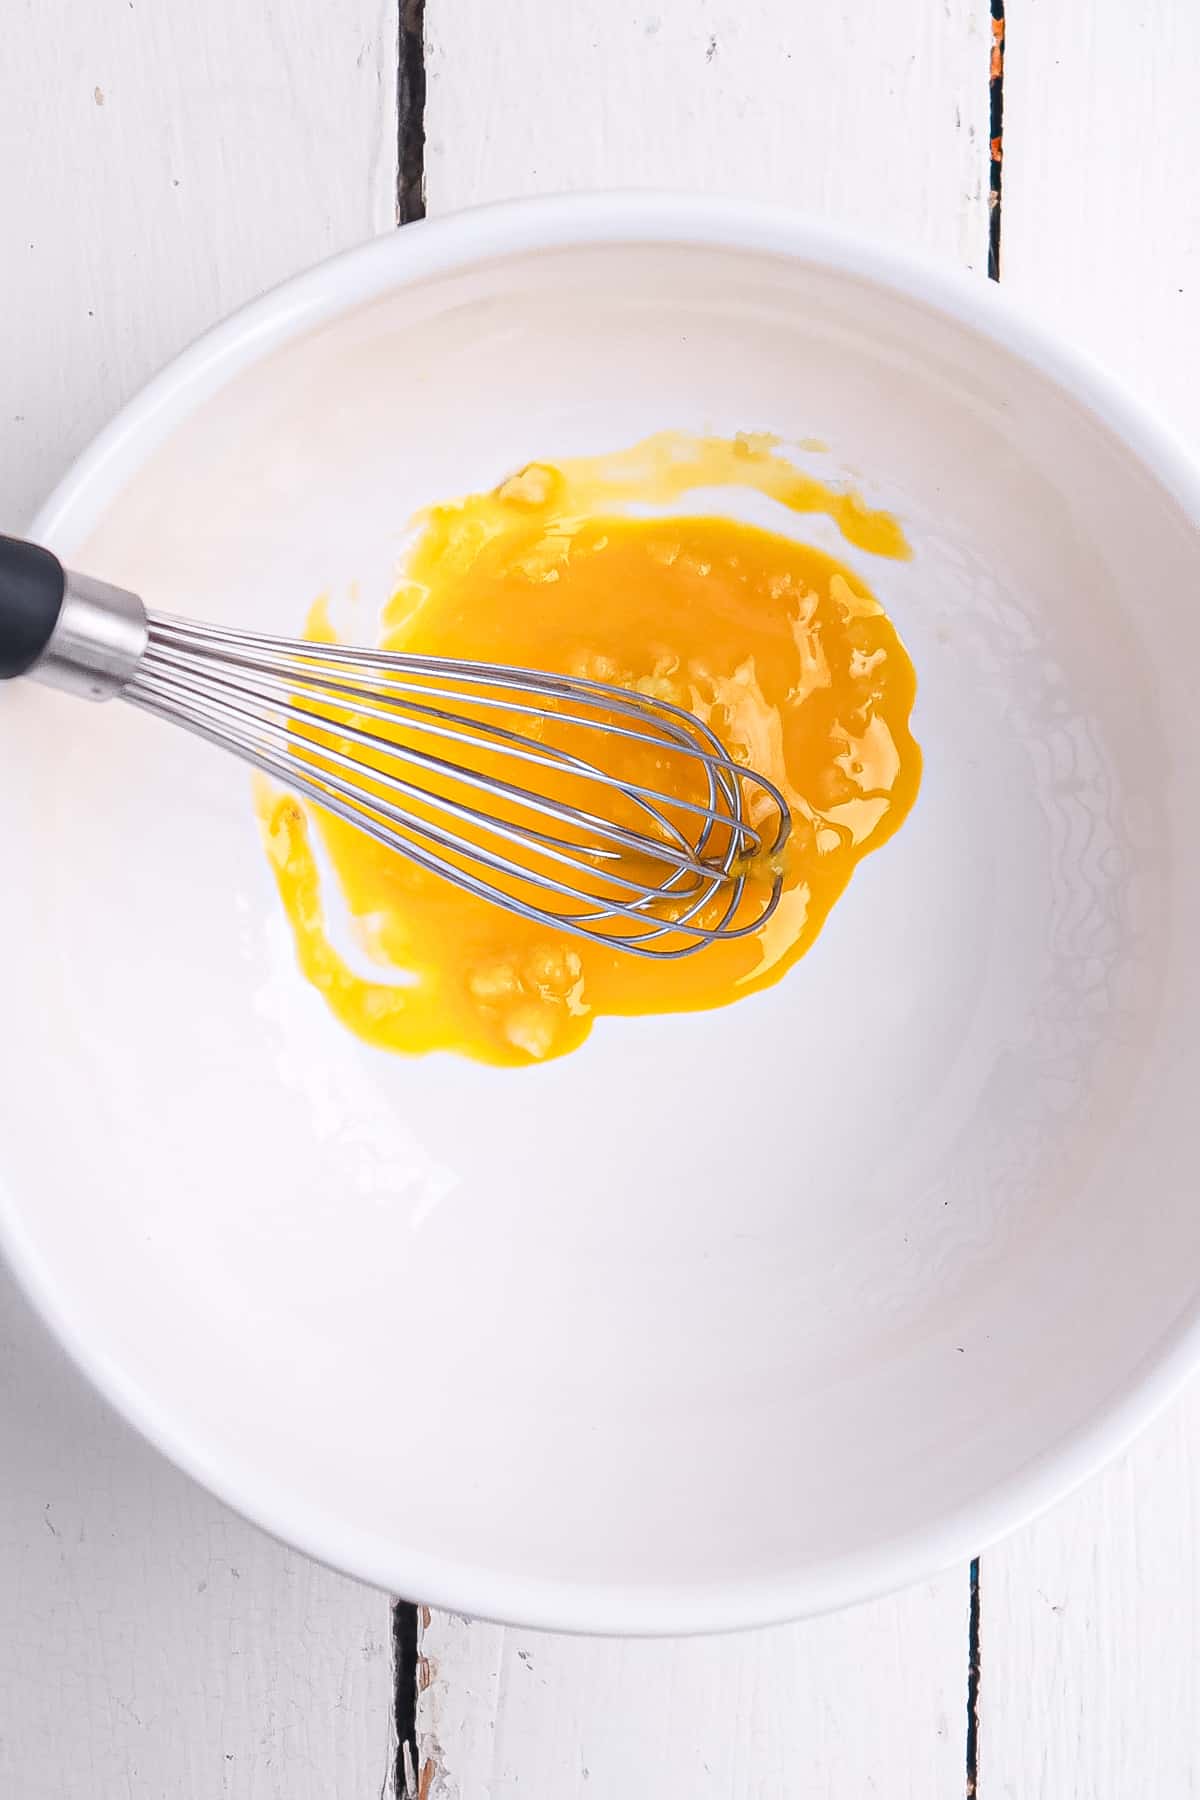 egg yolk and garlic mixed in a bowl.